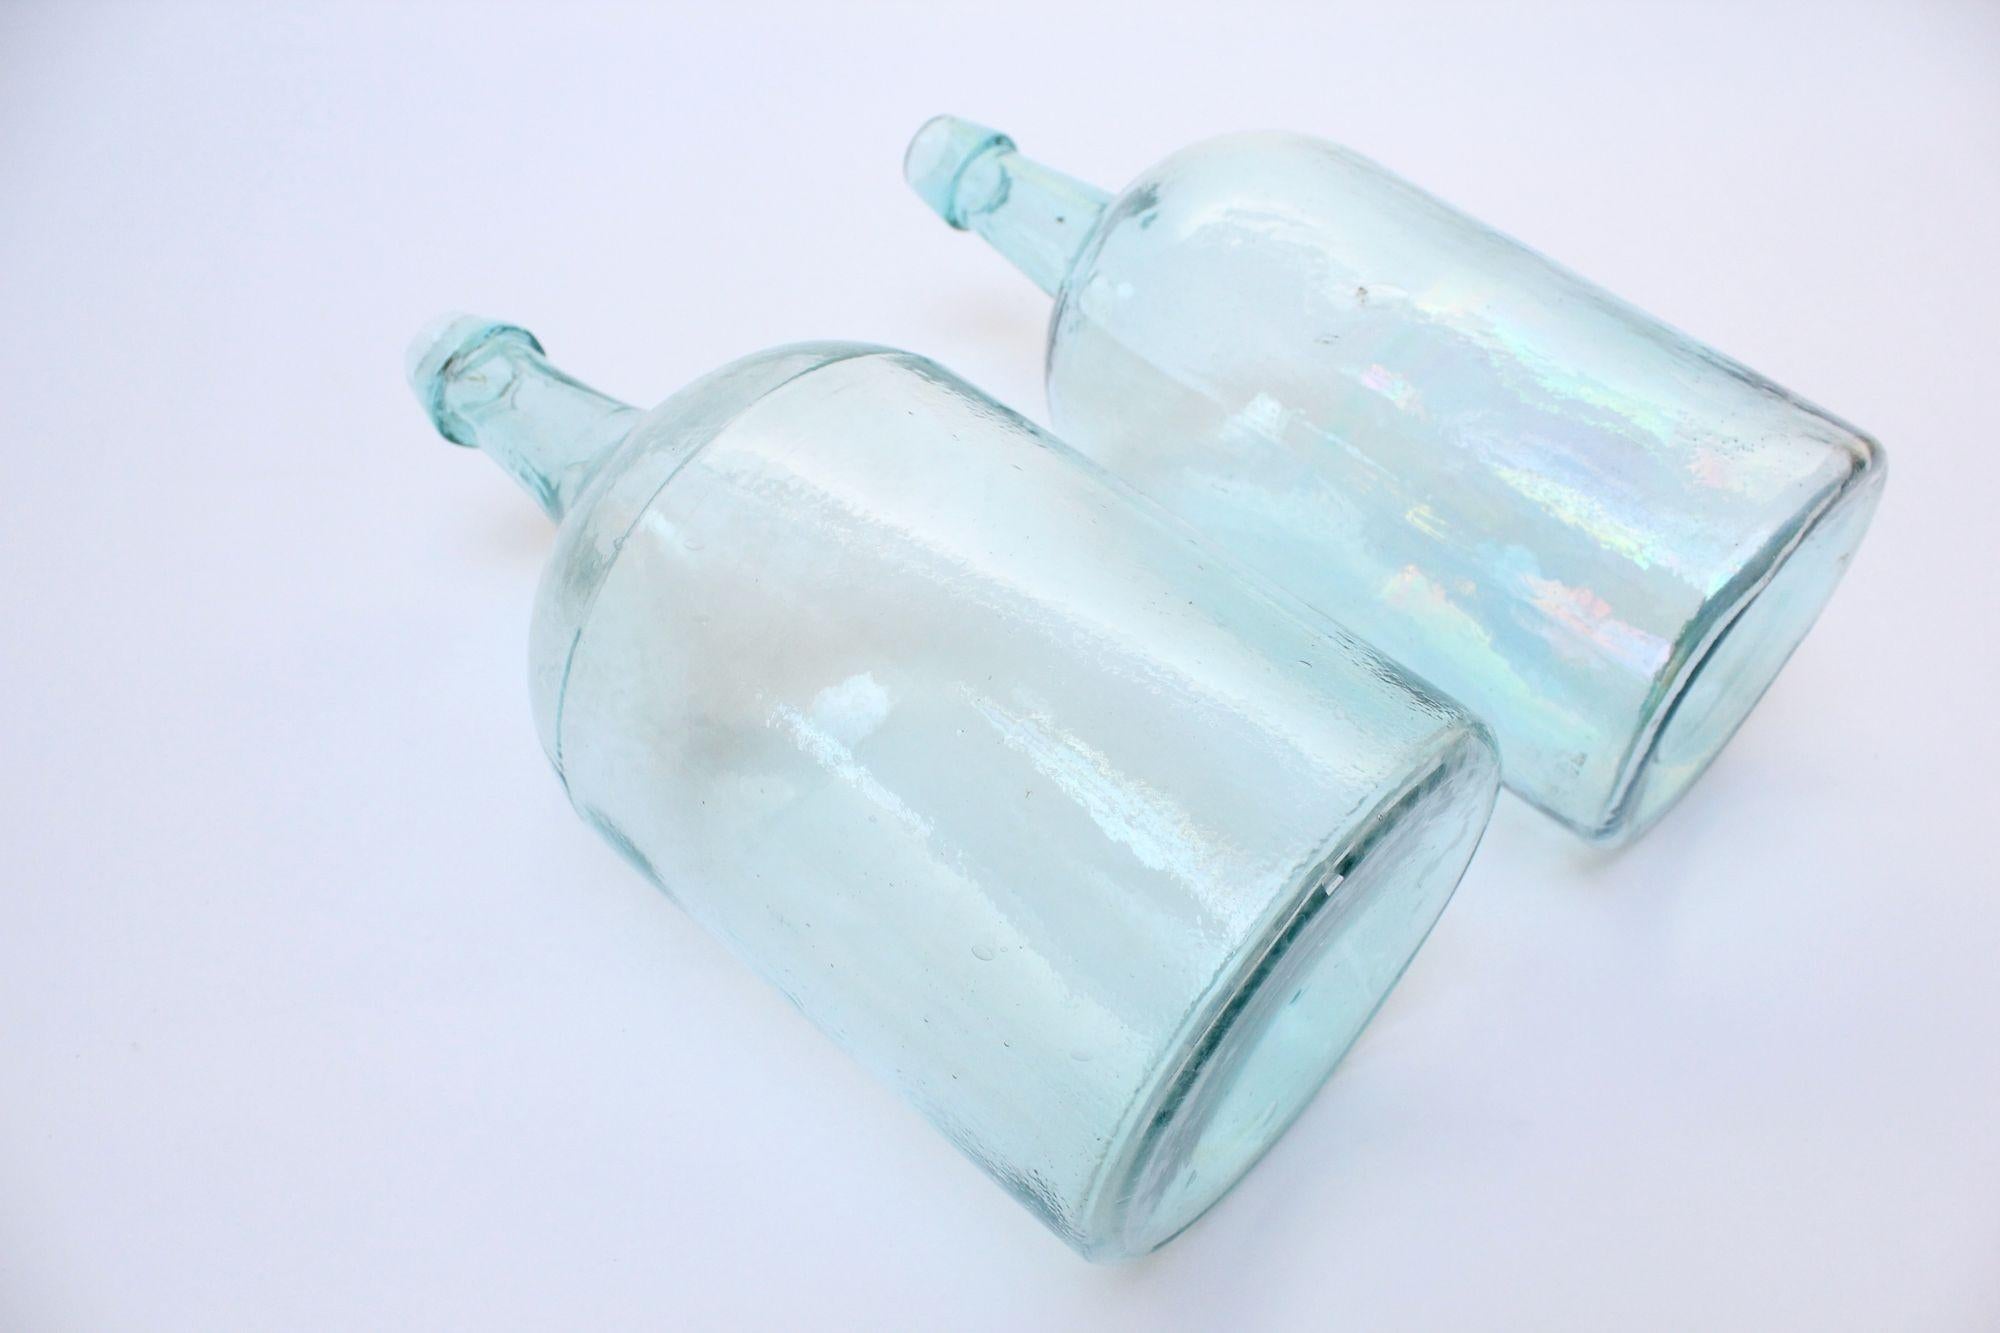 aqua glass bottles